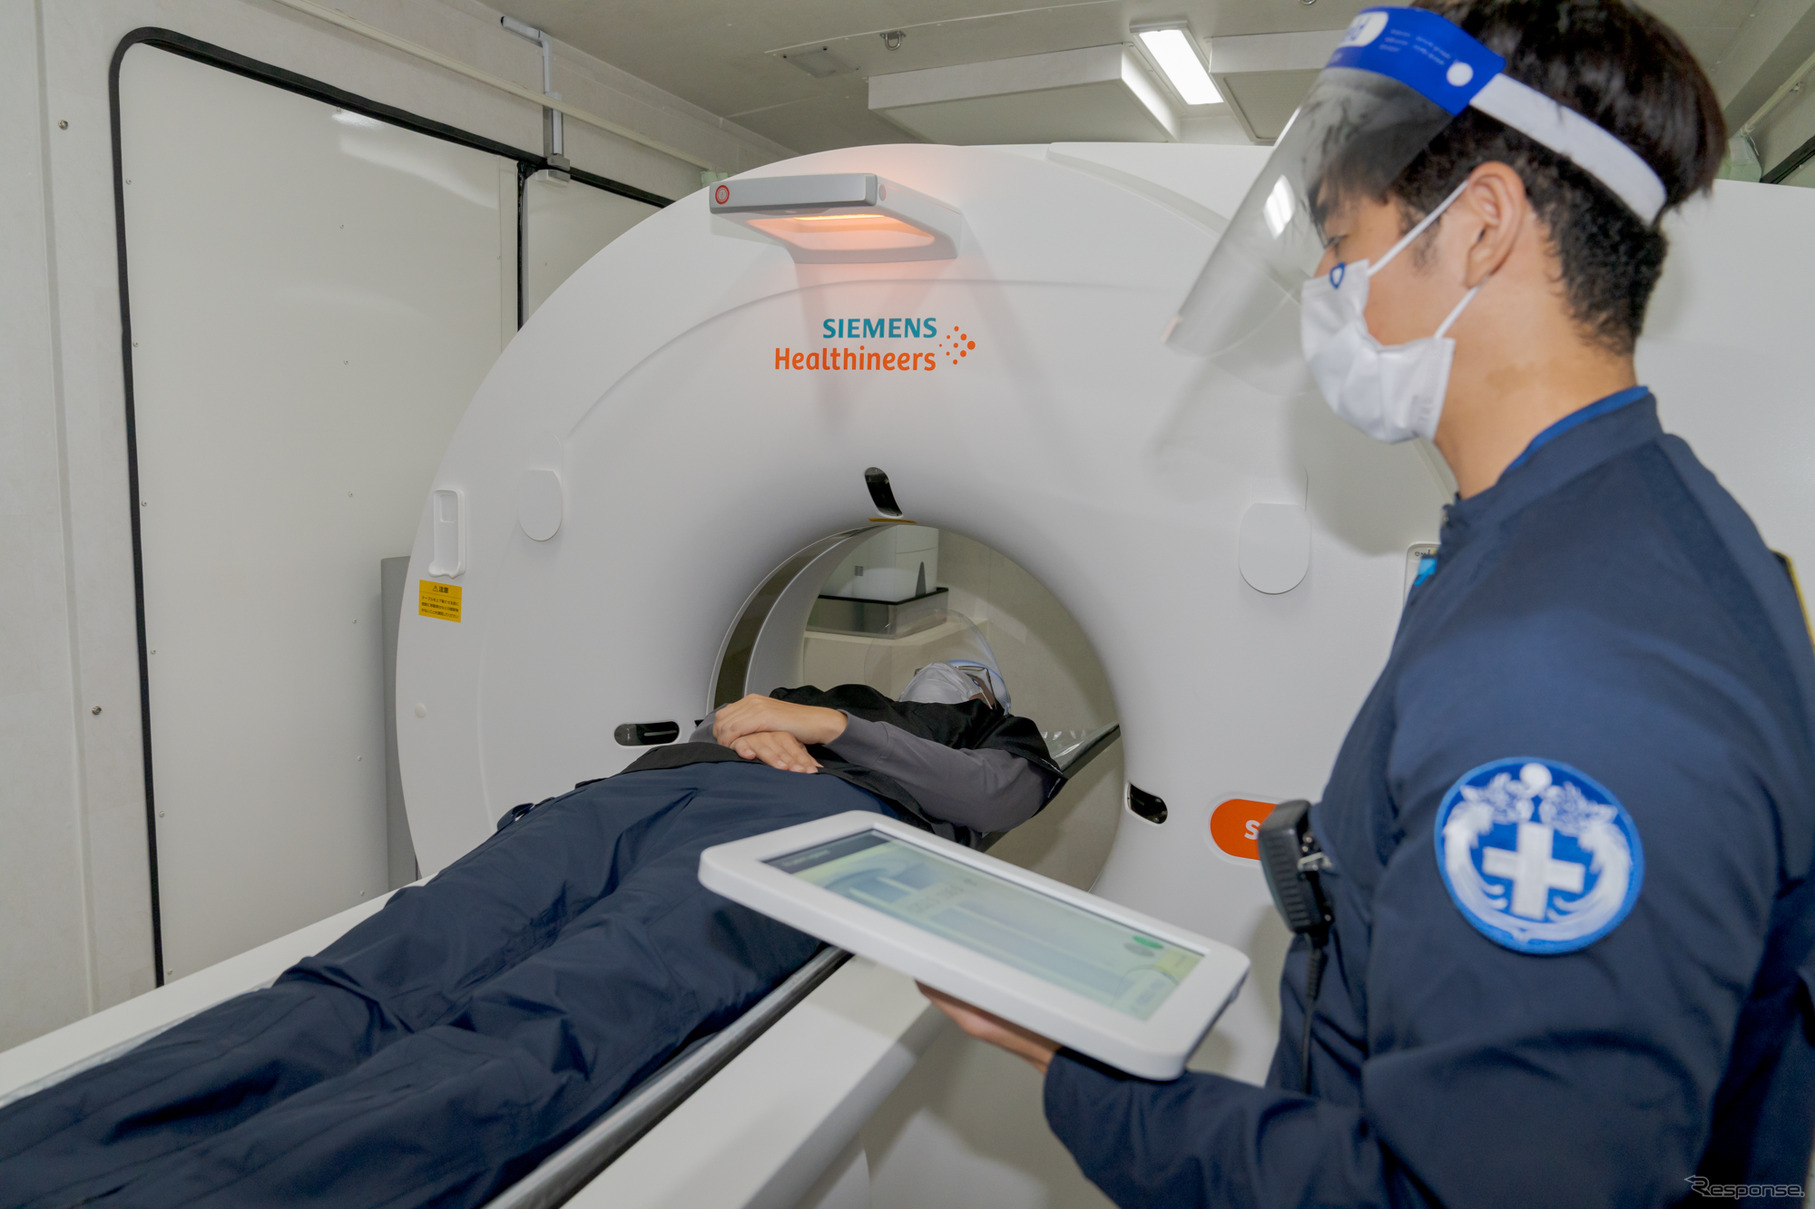 超音波検査室の奥にはCTスキャン用の部屋がある。このCT装置はサイズが非常にコンパクトでありながら、病院に設置されているものと同等の性能を持ち、タブレットによる操作にも対応しているとのこと。